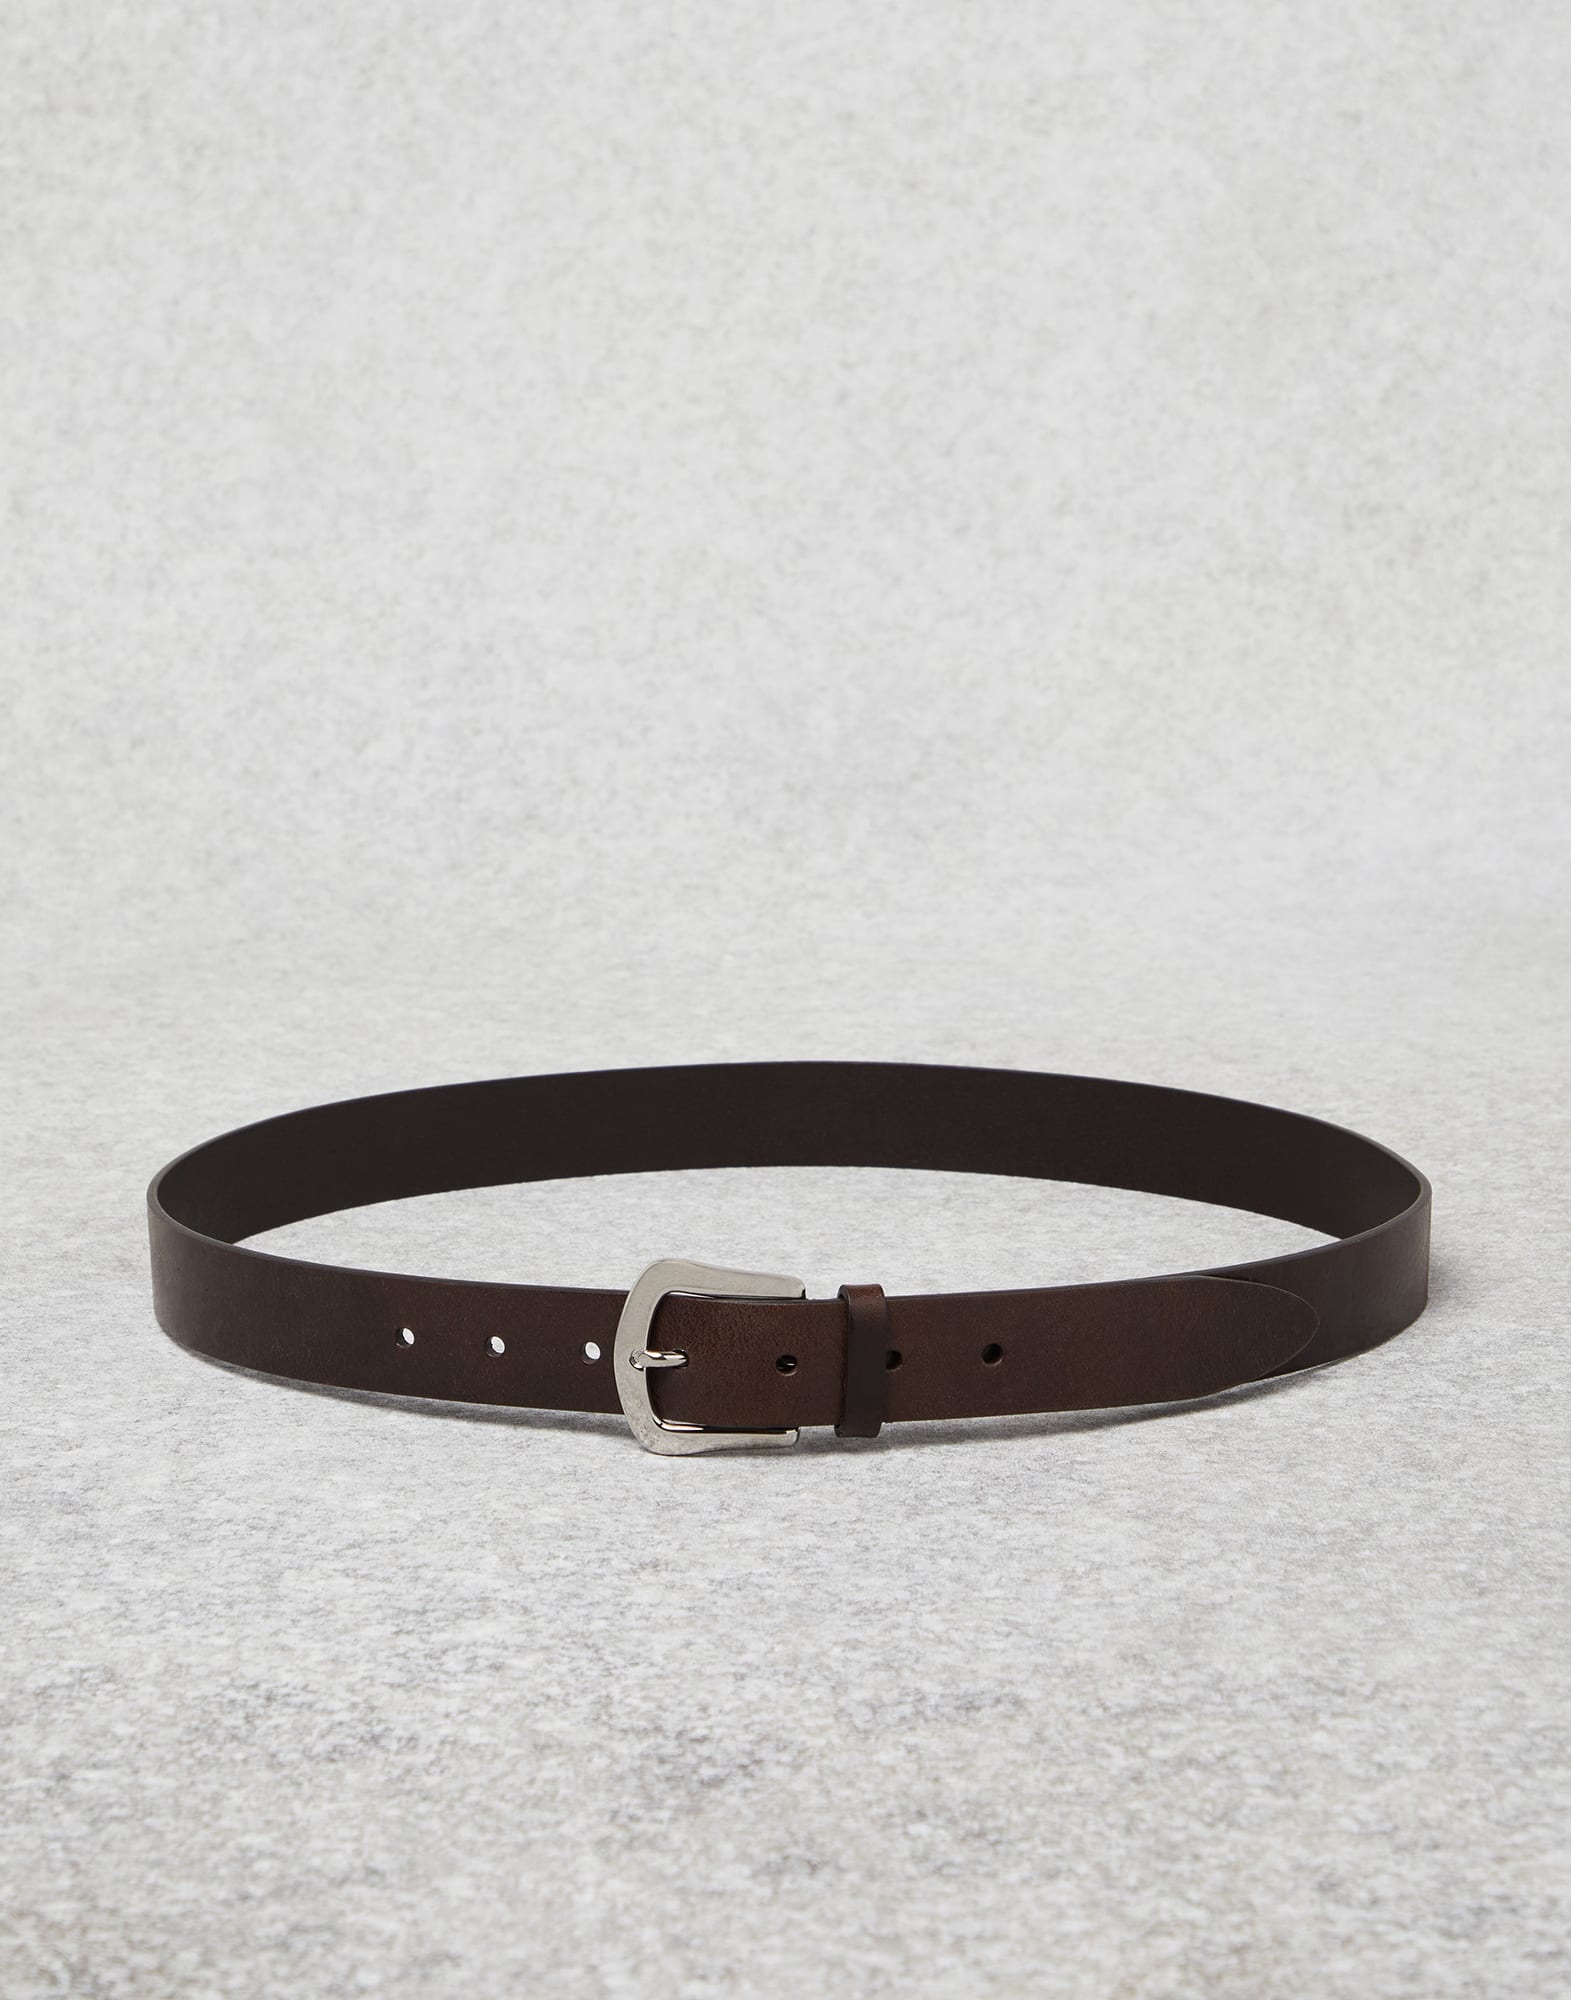 Cinturón de piel de becerro Marrón Oscuro Hombre - Brunello Cucinelli